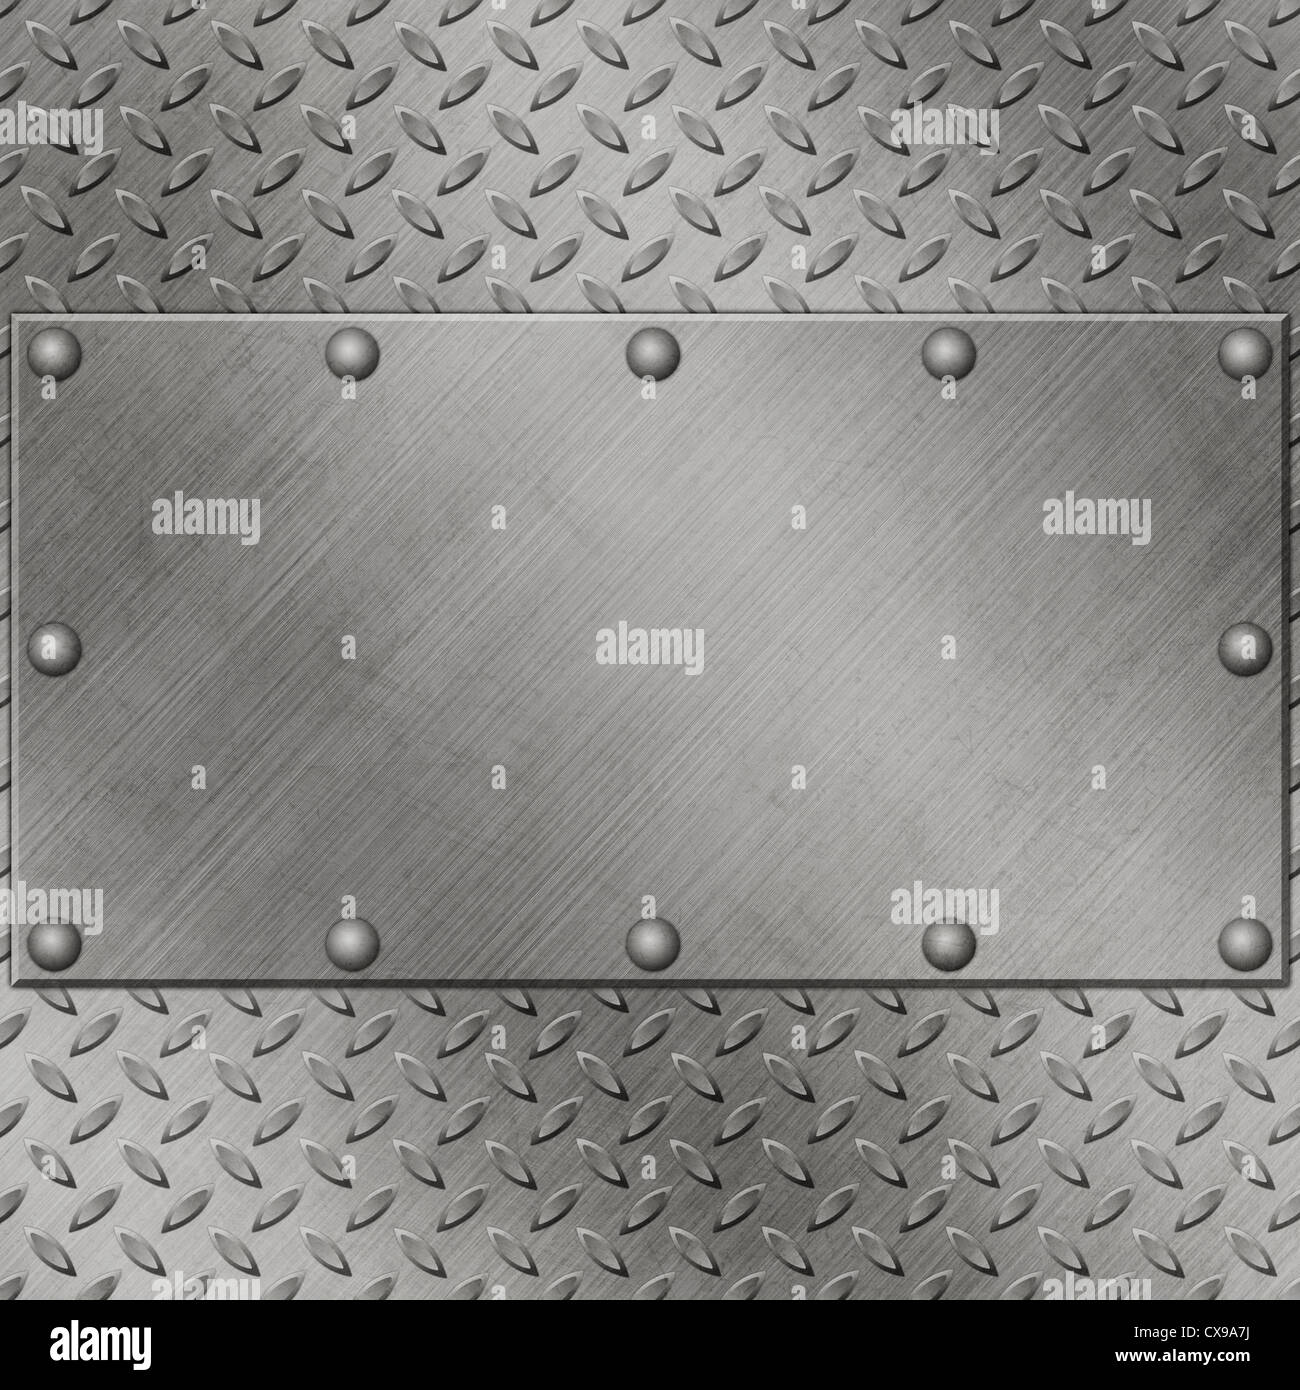 Metallplatte Oder Schild Mit Nieten über Gitter Stockbild - Bild von  element, schmutz: 53996829